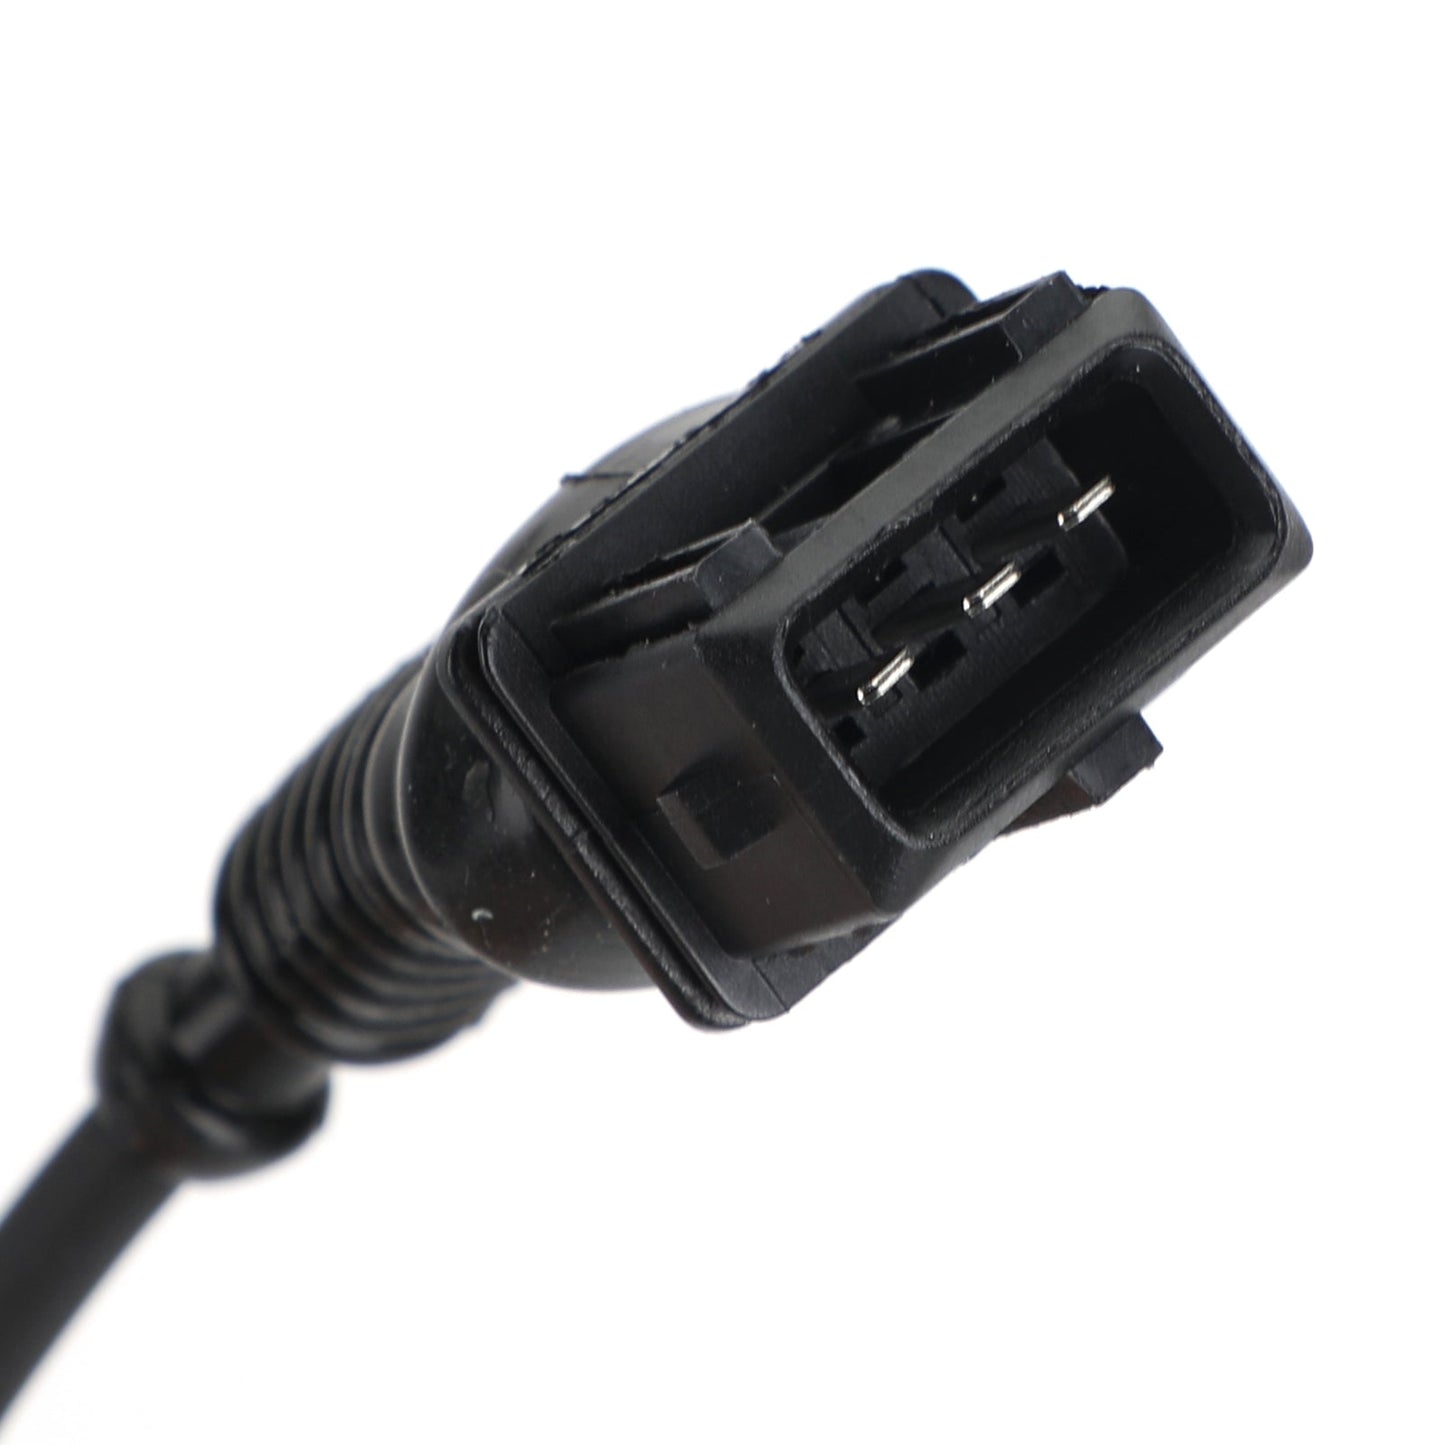 2x Camshaft Position Sensor ENTRY+EXIT For BMW E46 E39 E60 E38 E65 M52 M54